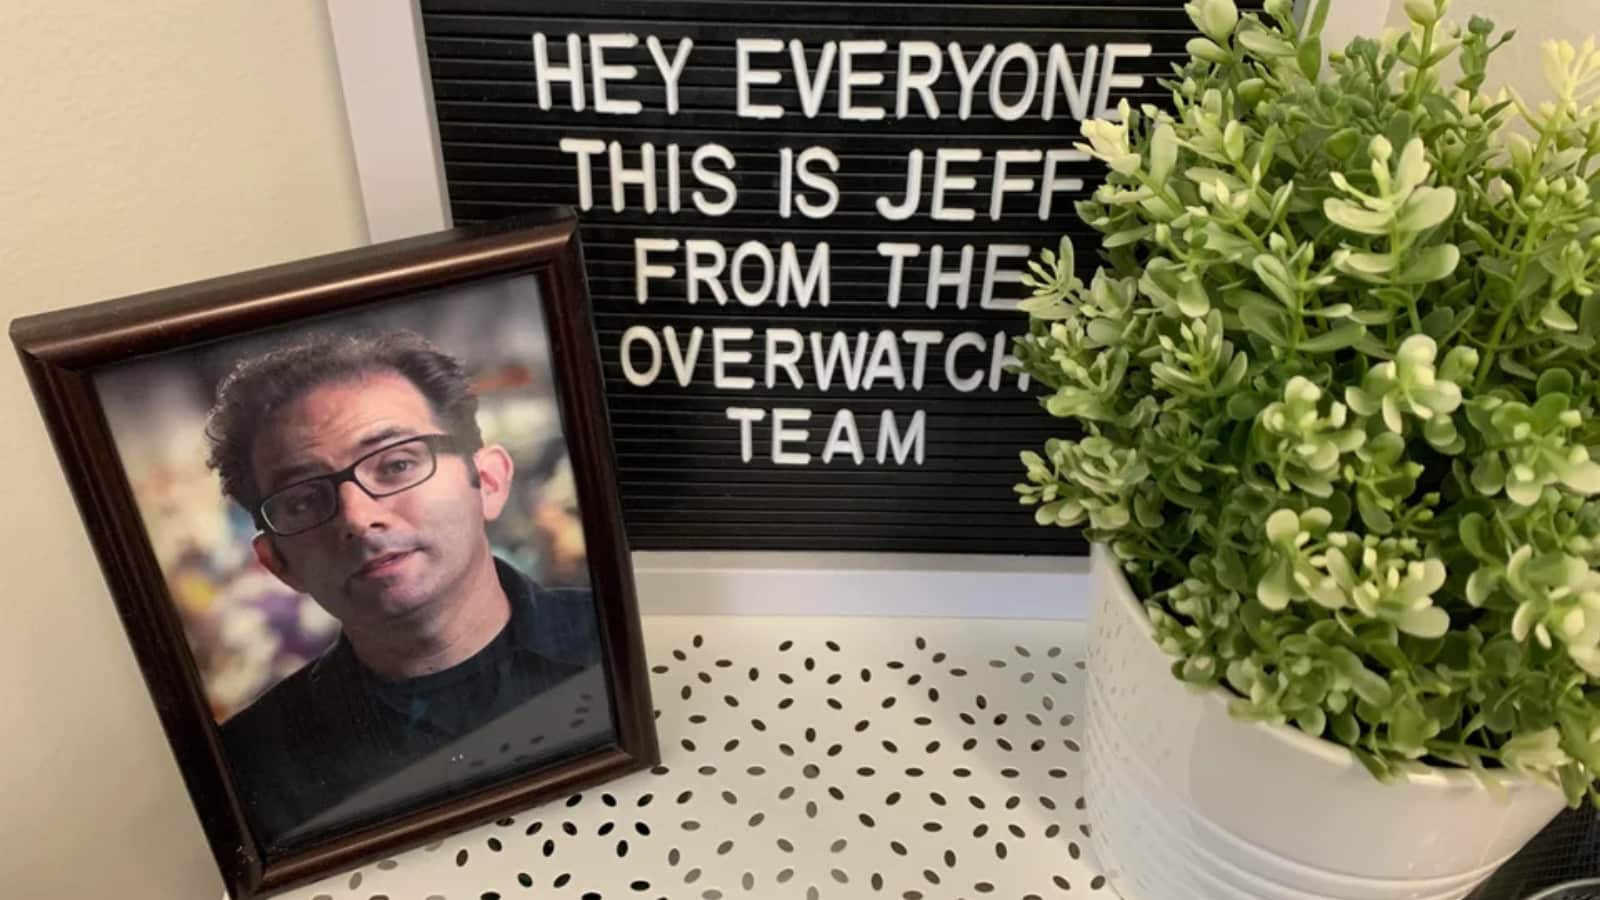 Overwatch fans honor Jeff Kaplan